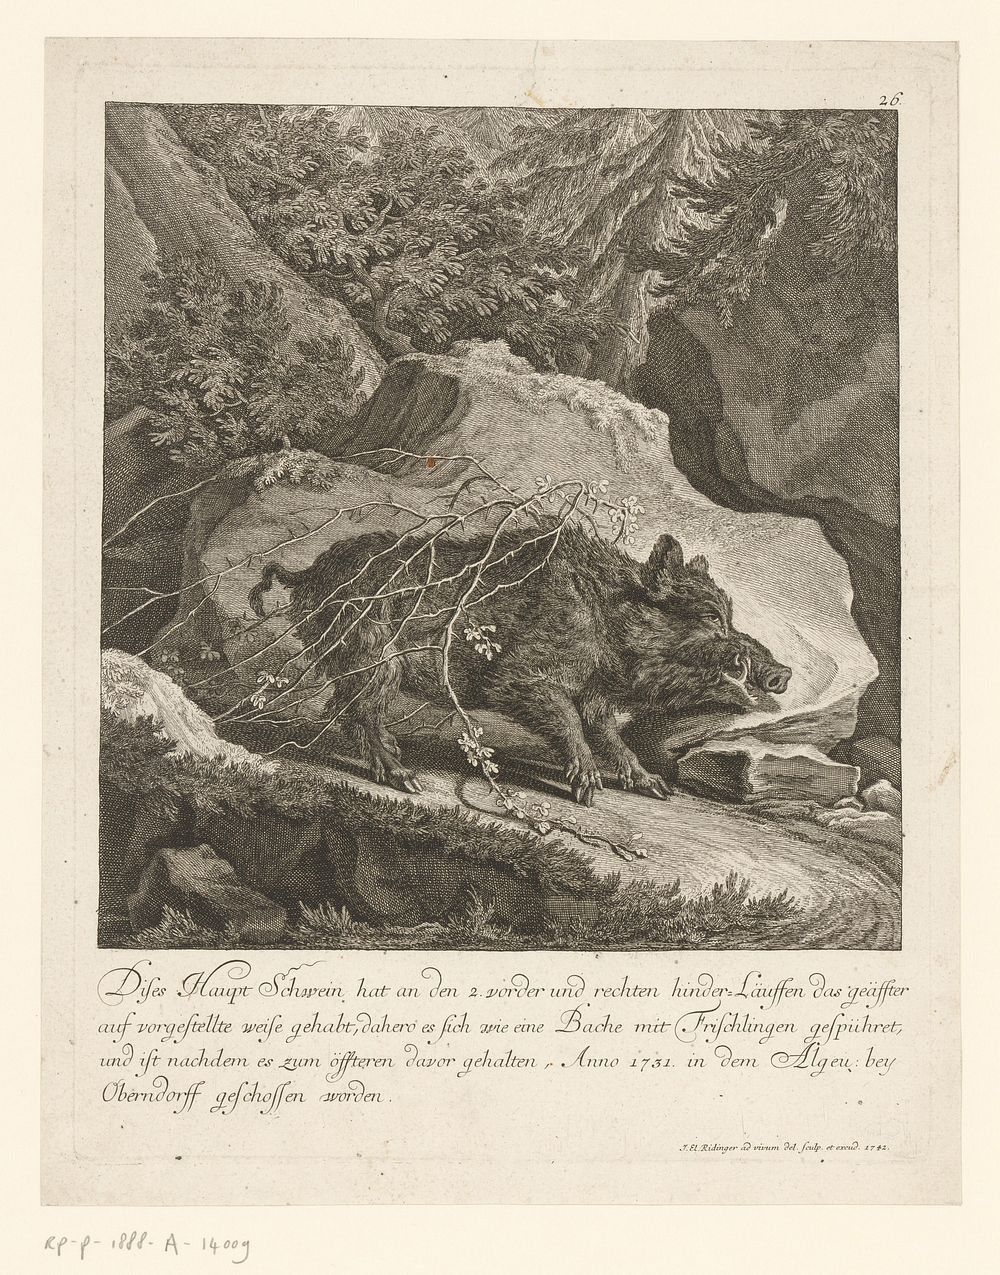 Wild zwijn gevangen in een doornenstruik (1742) by Johann Elias Ridinger and Johann Elias Ridinger